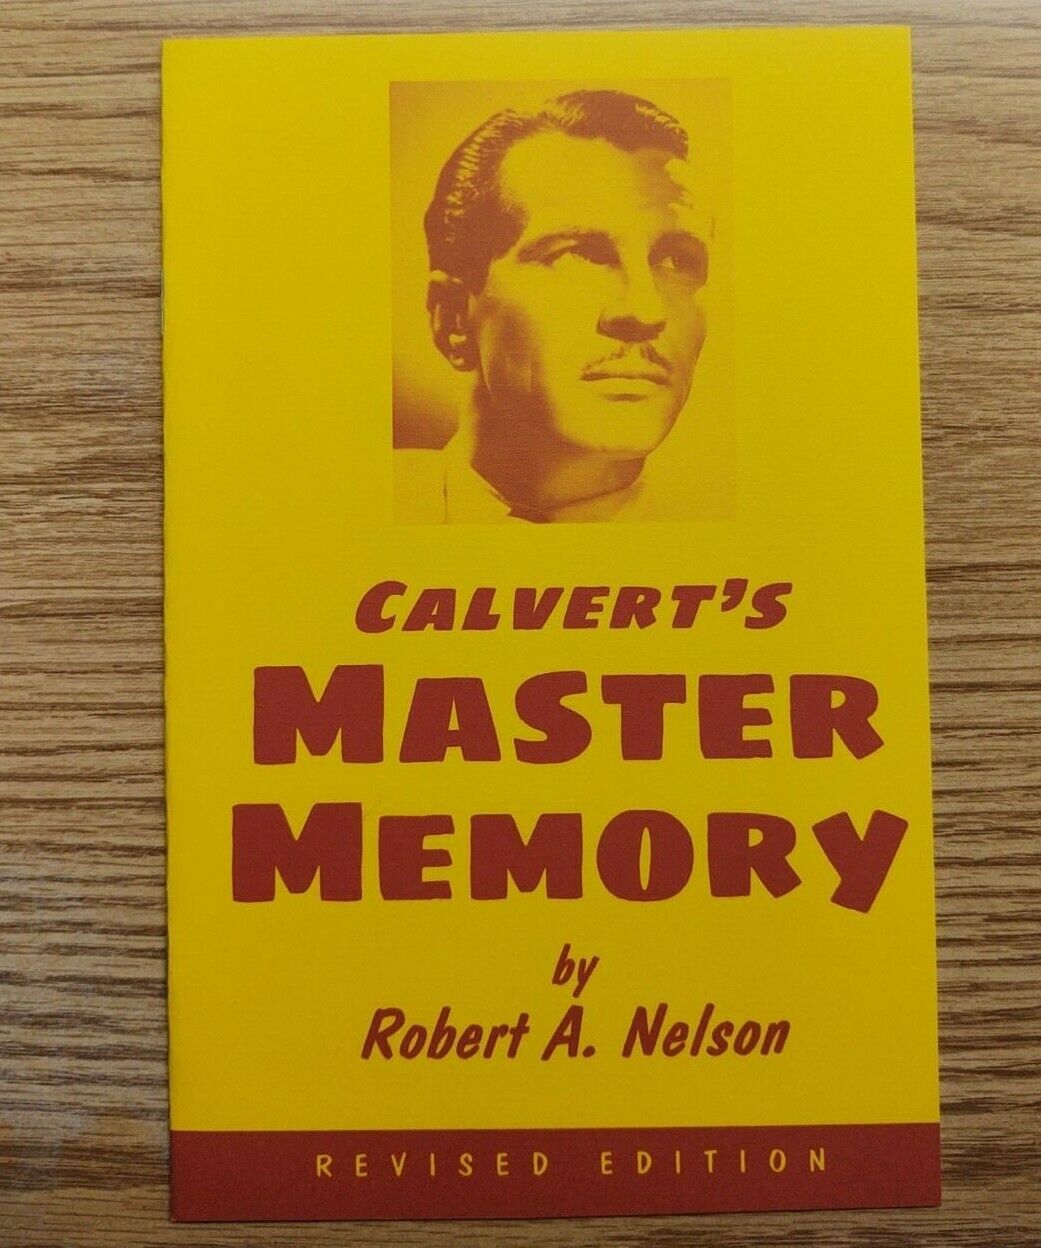 Calvert's Master Memory by Robert A. Nelson